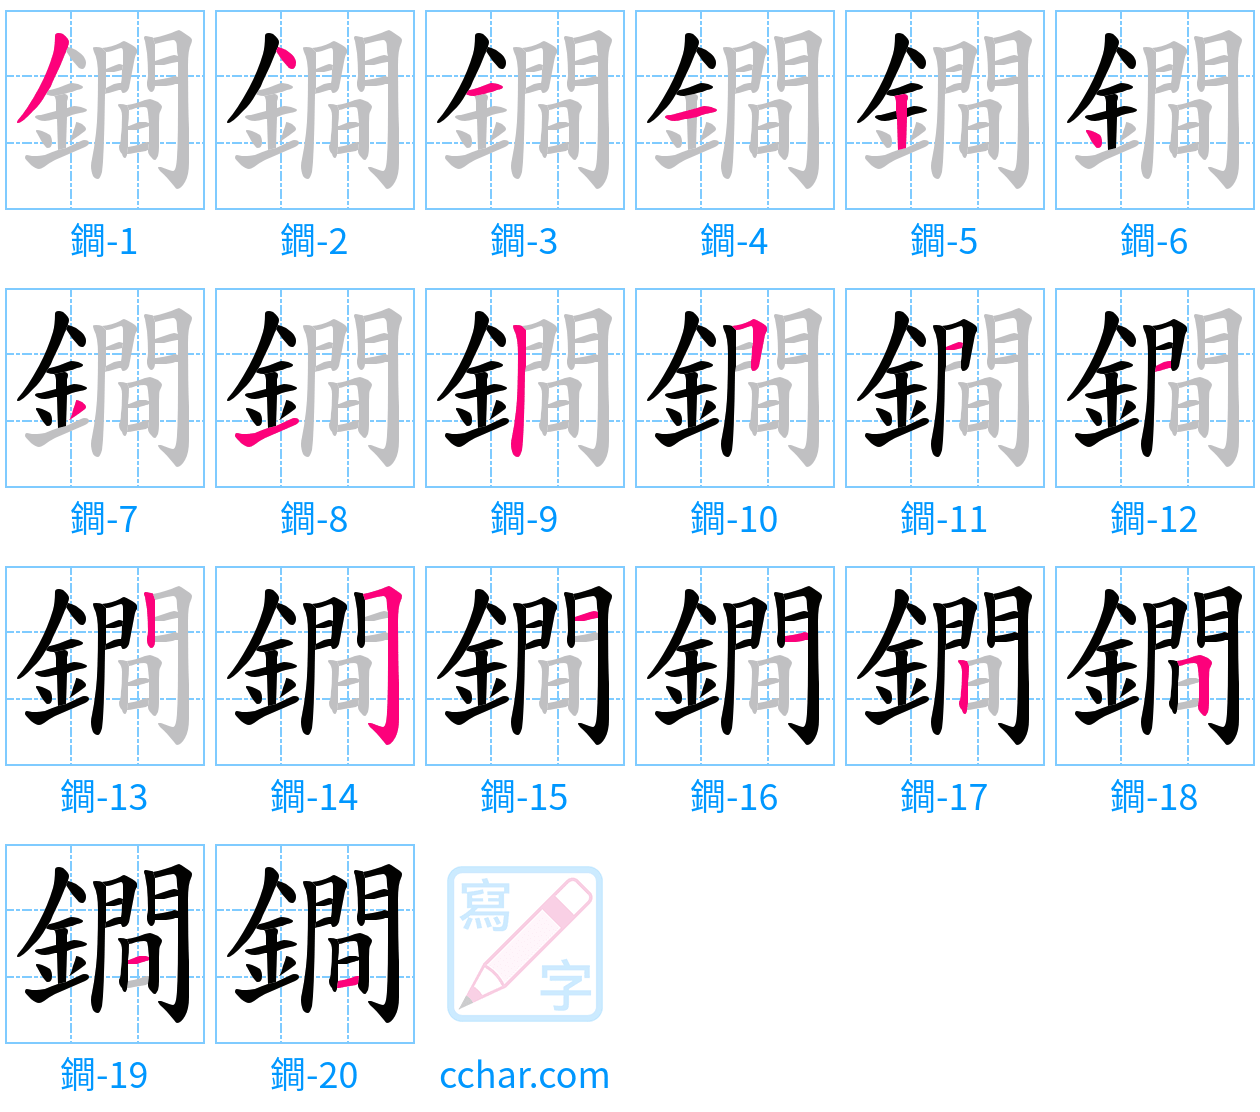 鐧 stroke order step-by-step diagram